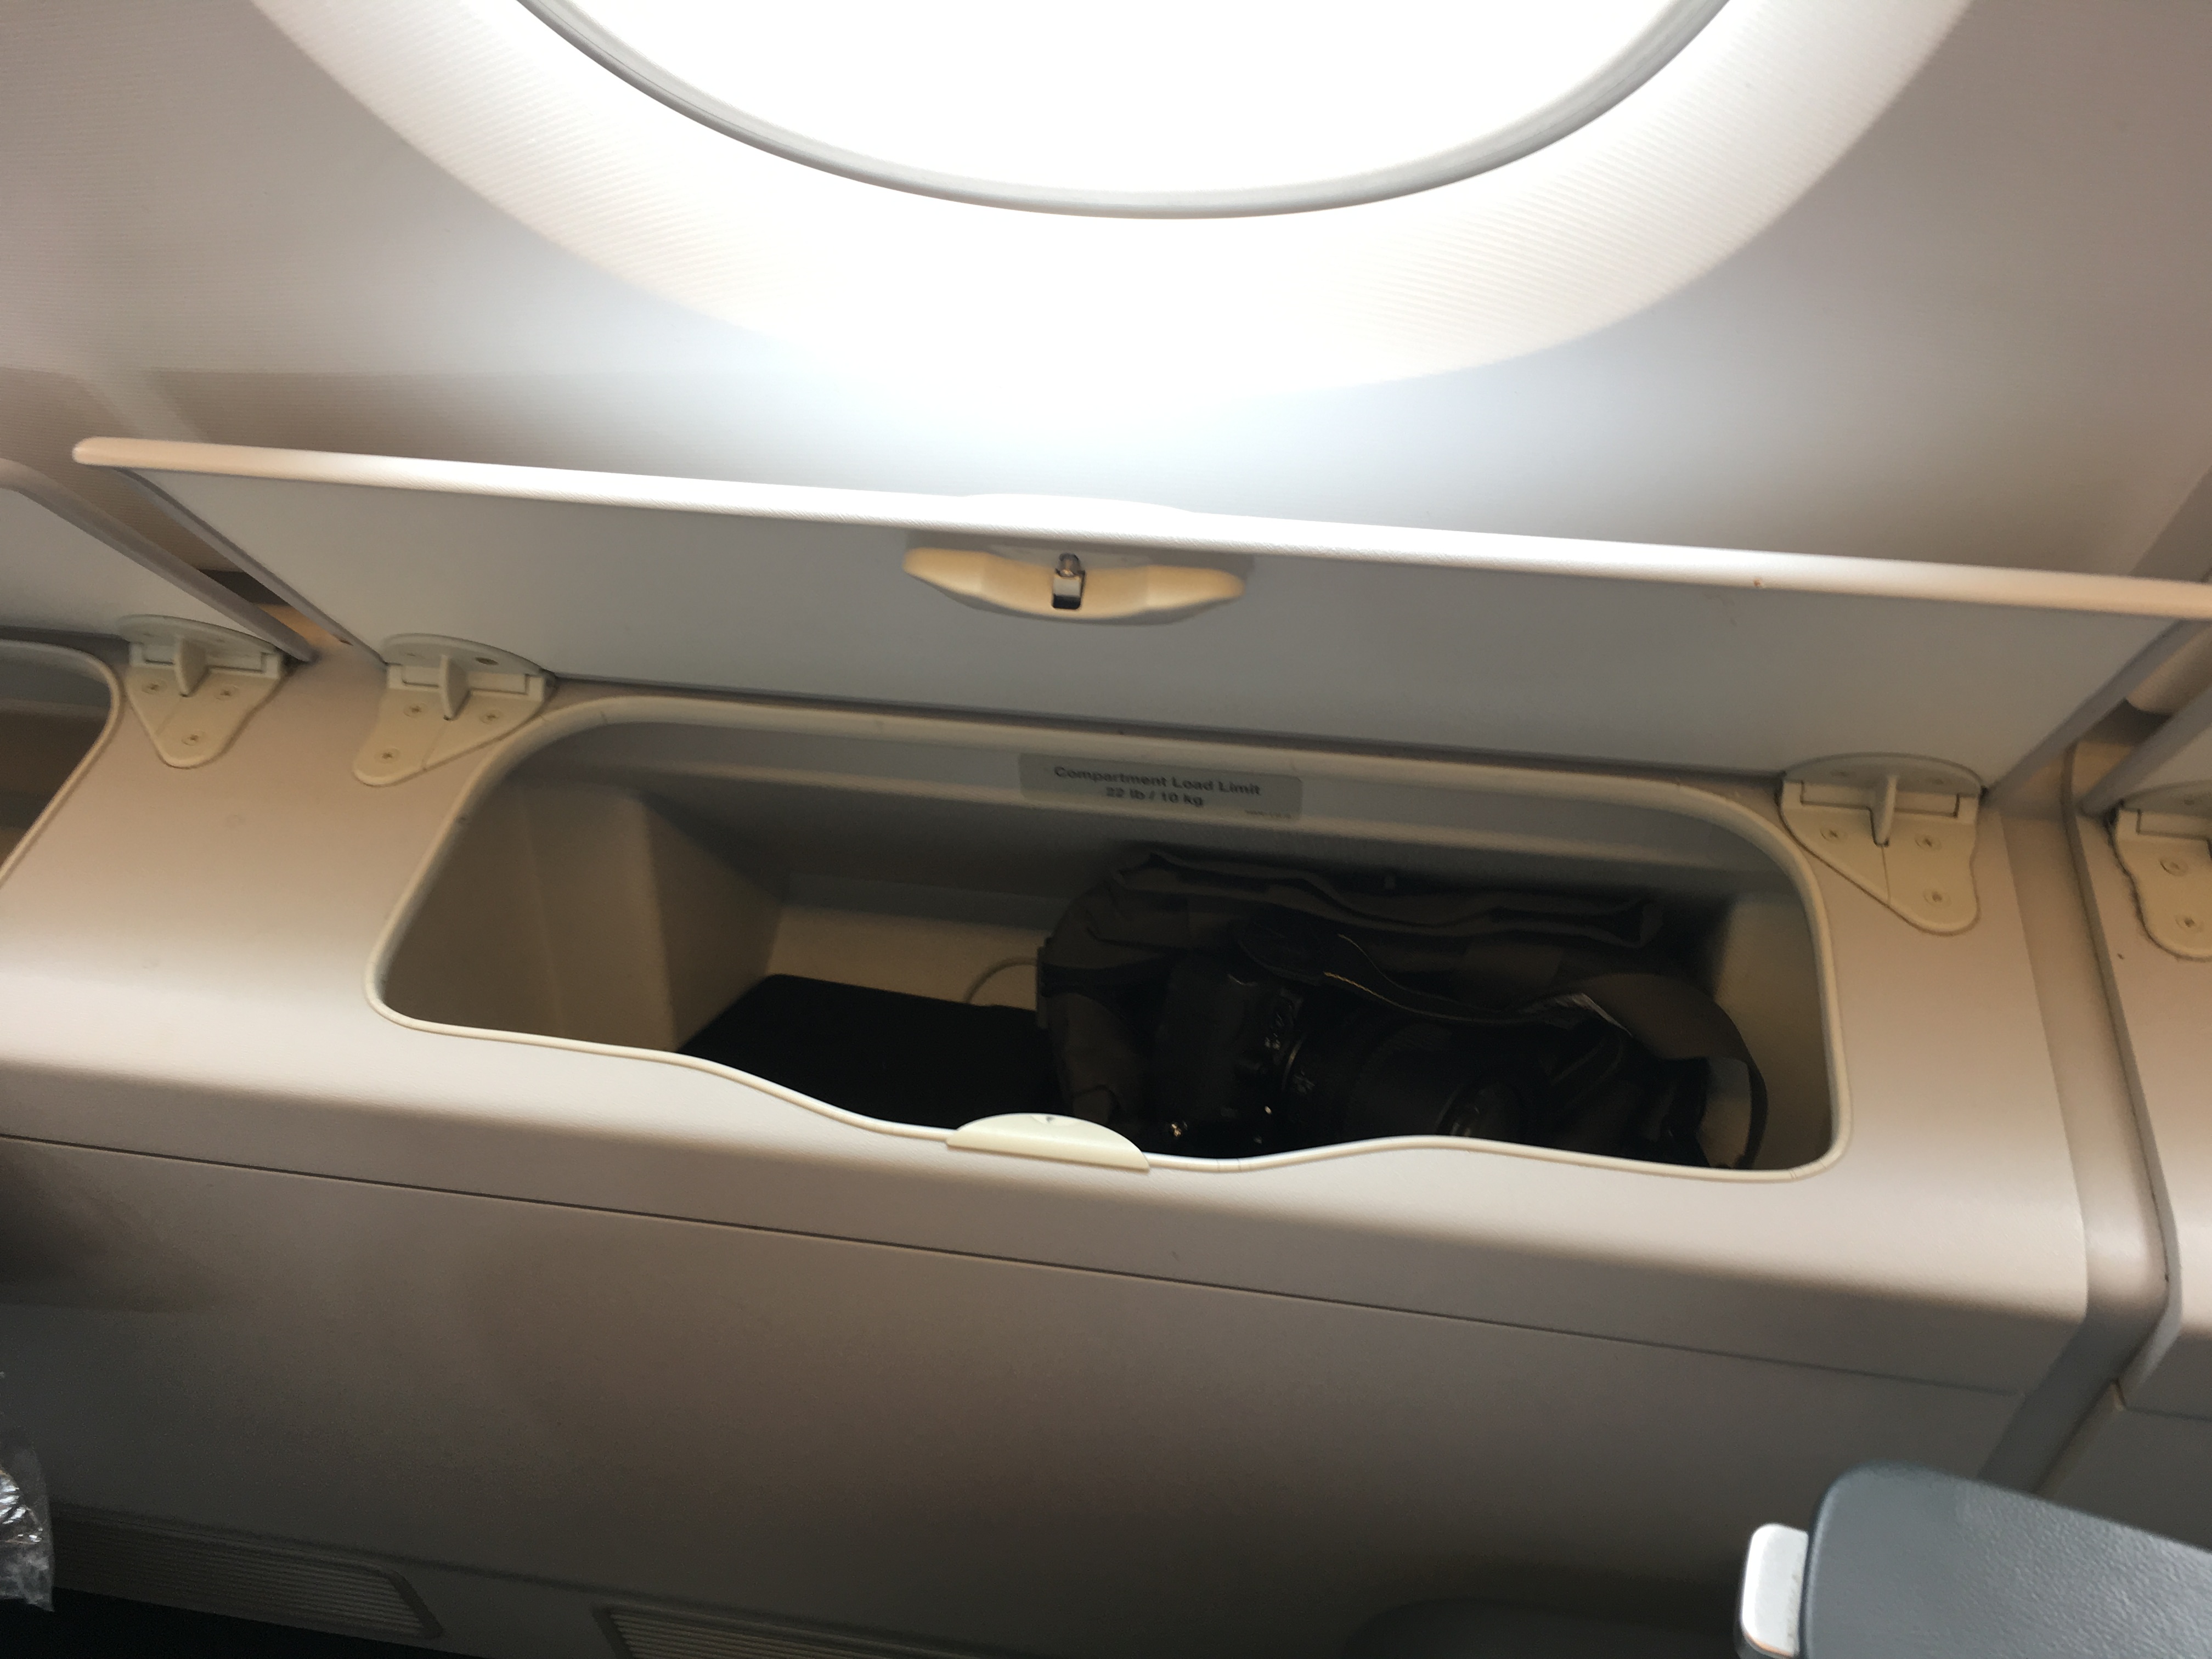 һżȻ ¹ɯ LH721 A380 PEK-FRA Biz Class report